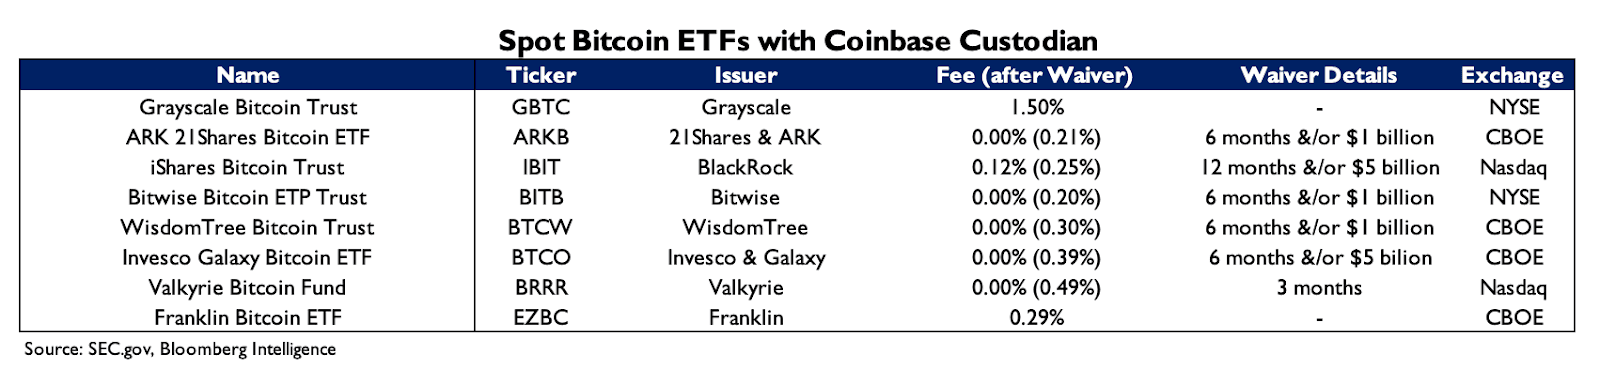 các quỹ chọn coinbase làm đơn vị lưu ký bitcoin